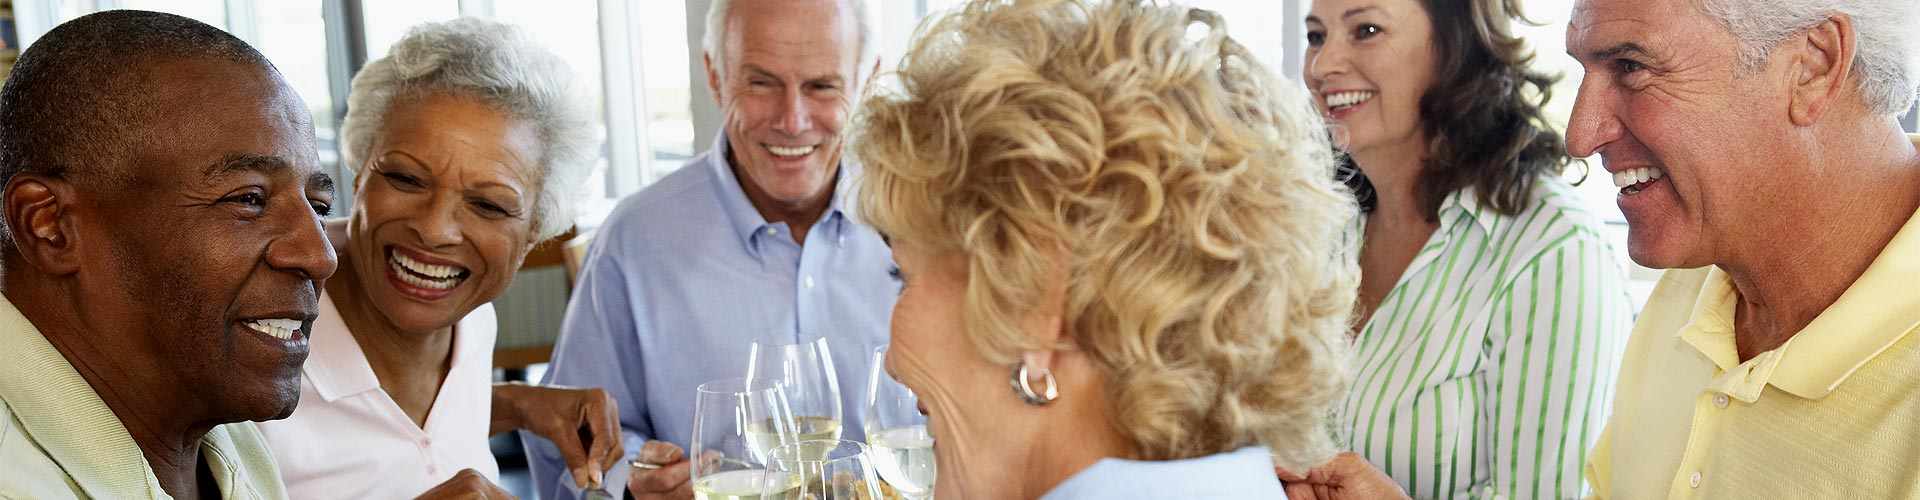 Restaurantes para jubilaciones 2019 en Granollers